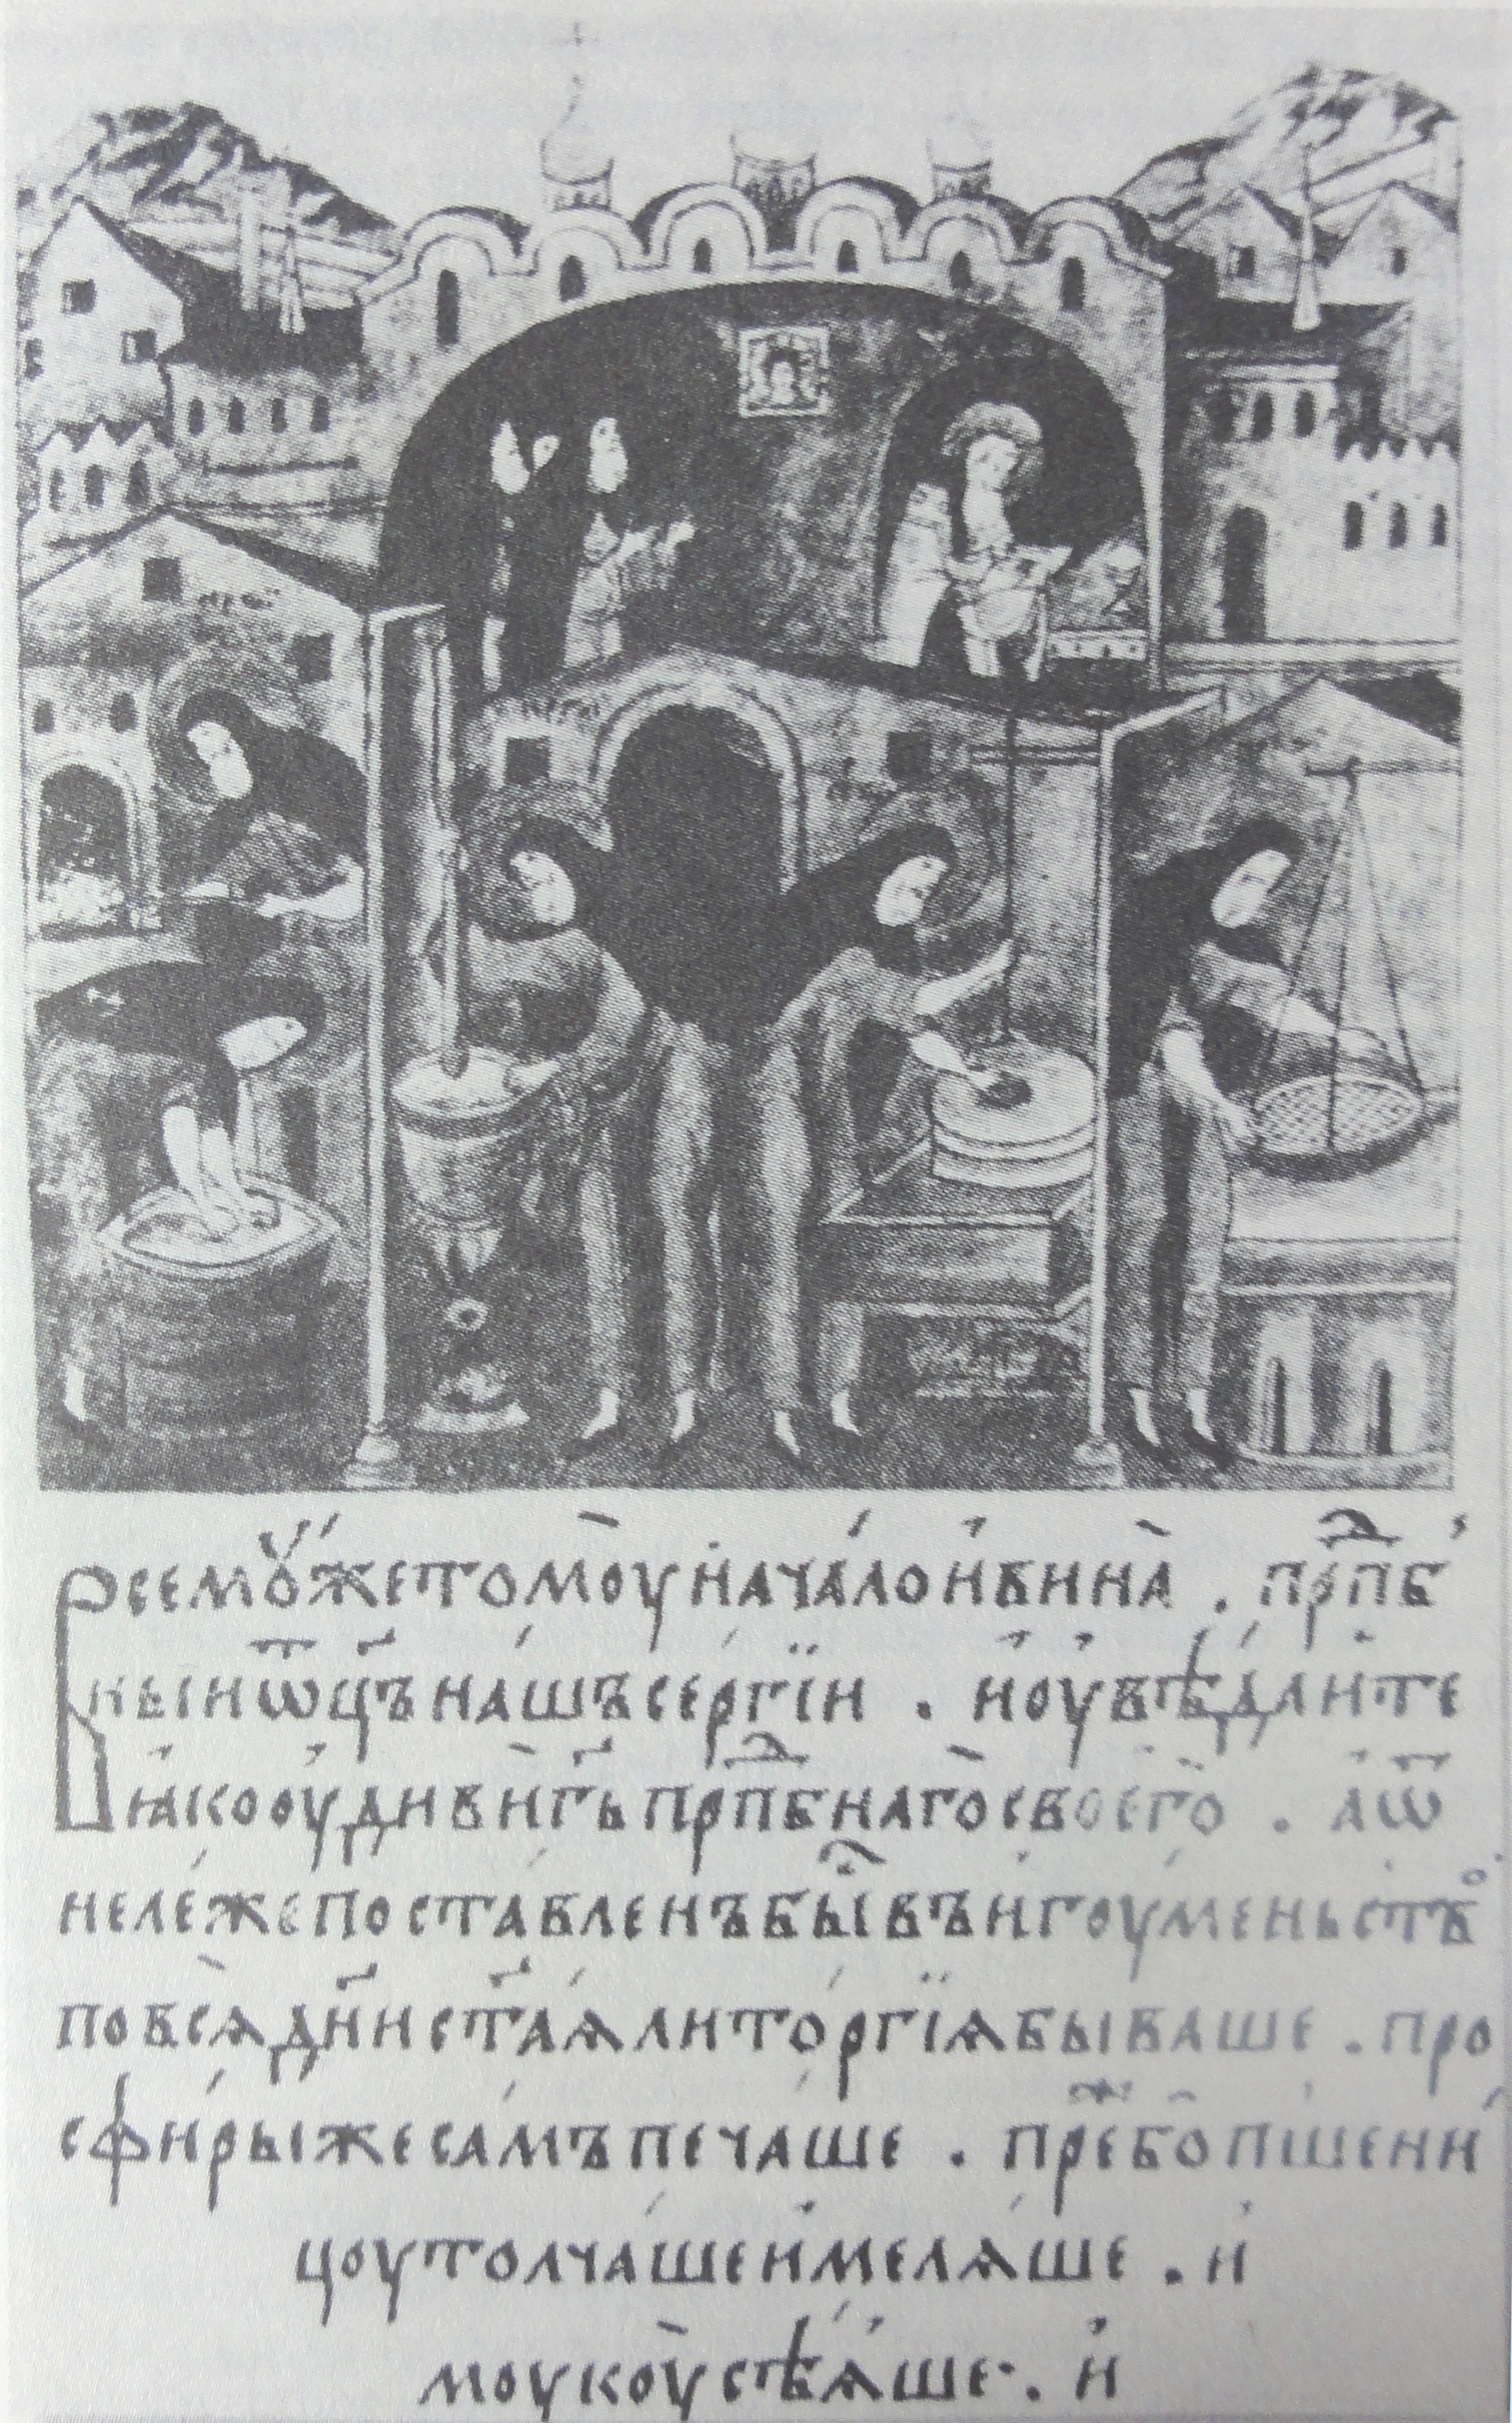 Le moine-abbé Sergius préparant le pain levé de la communion au 16ème siècle. 